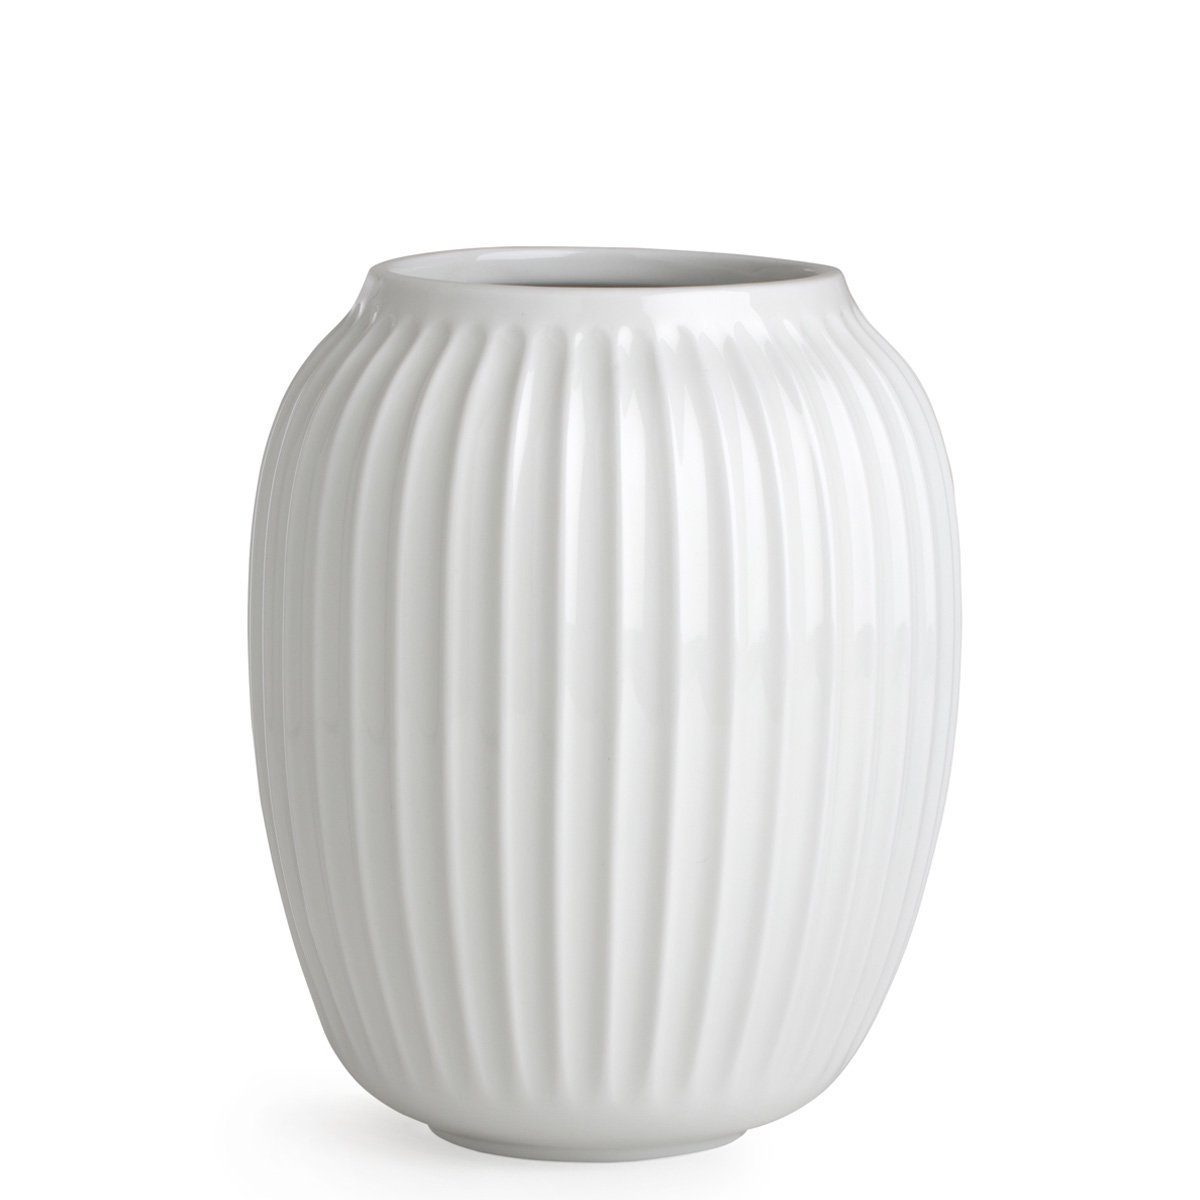 Kähler Tischvase Hammershøi 21 cm; Bauchige Vase mit Rillen-Struktur; Designer Dekovase Weiß